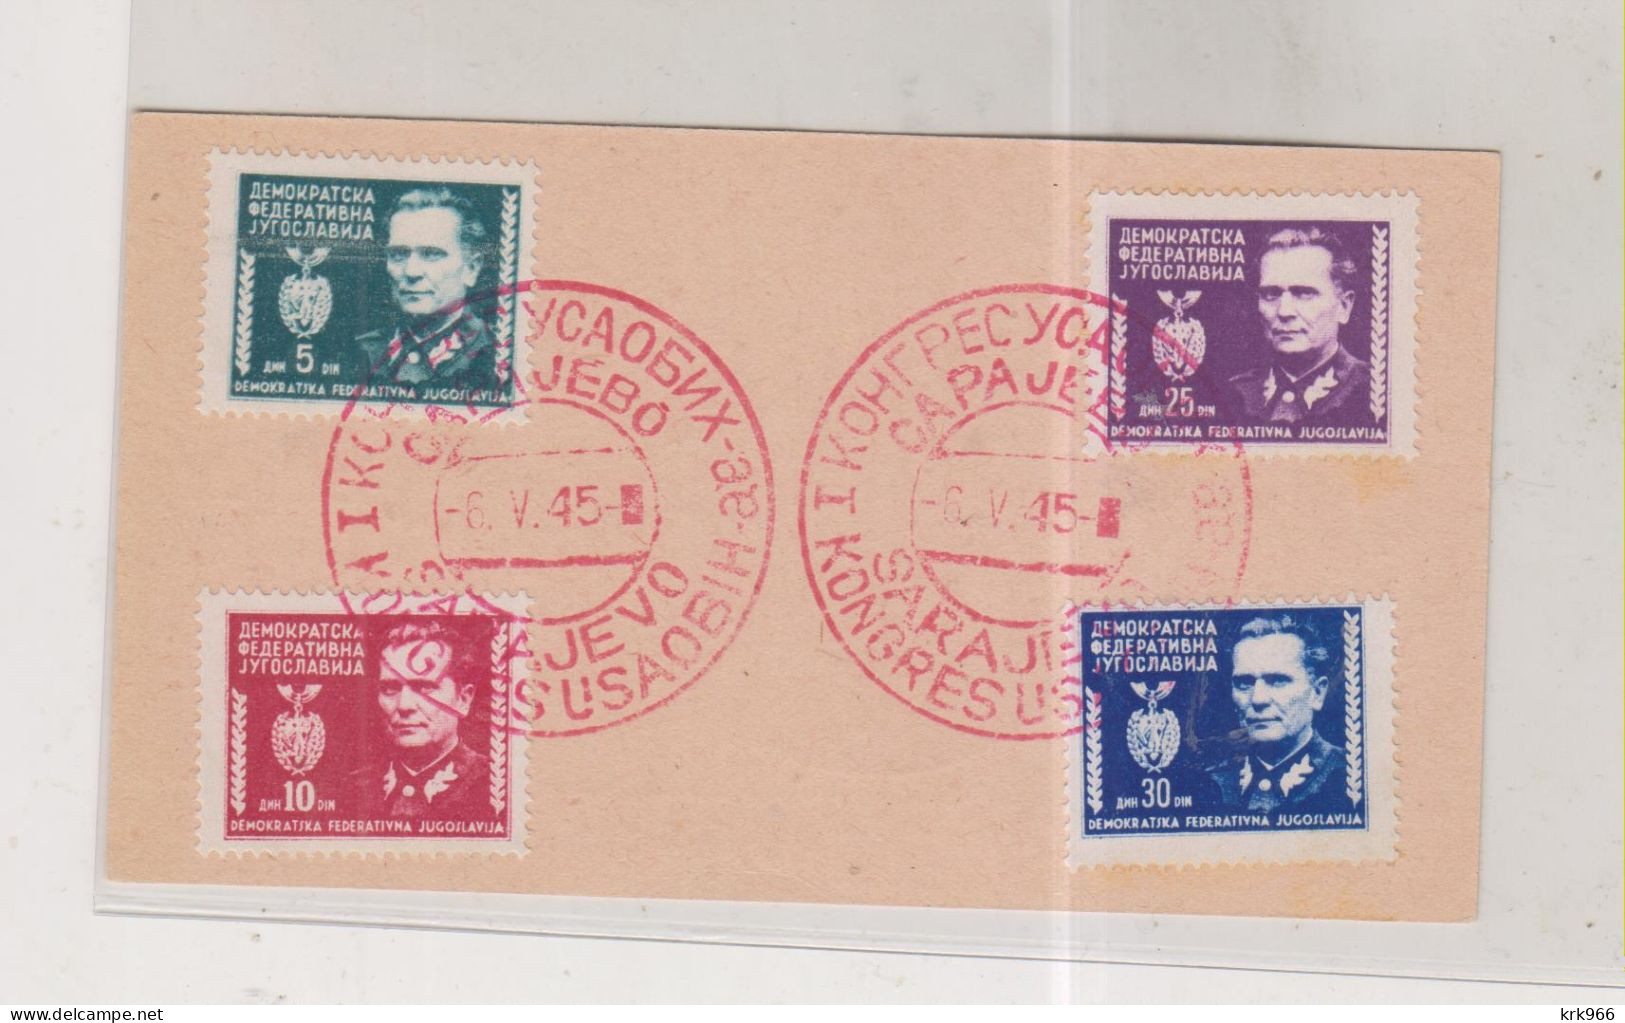 YUGOSLAVIA,1945 SARAJEVO Nice Postcard - Covers & Documents